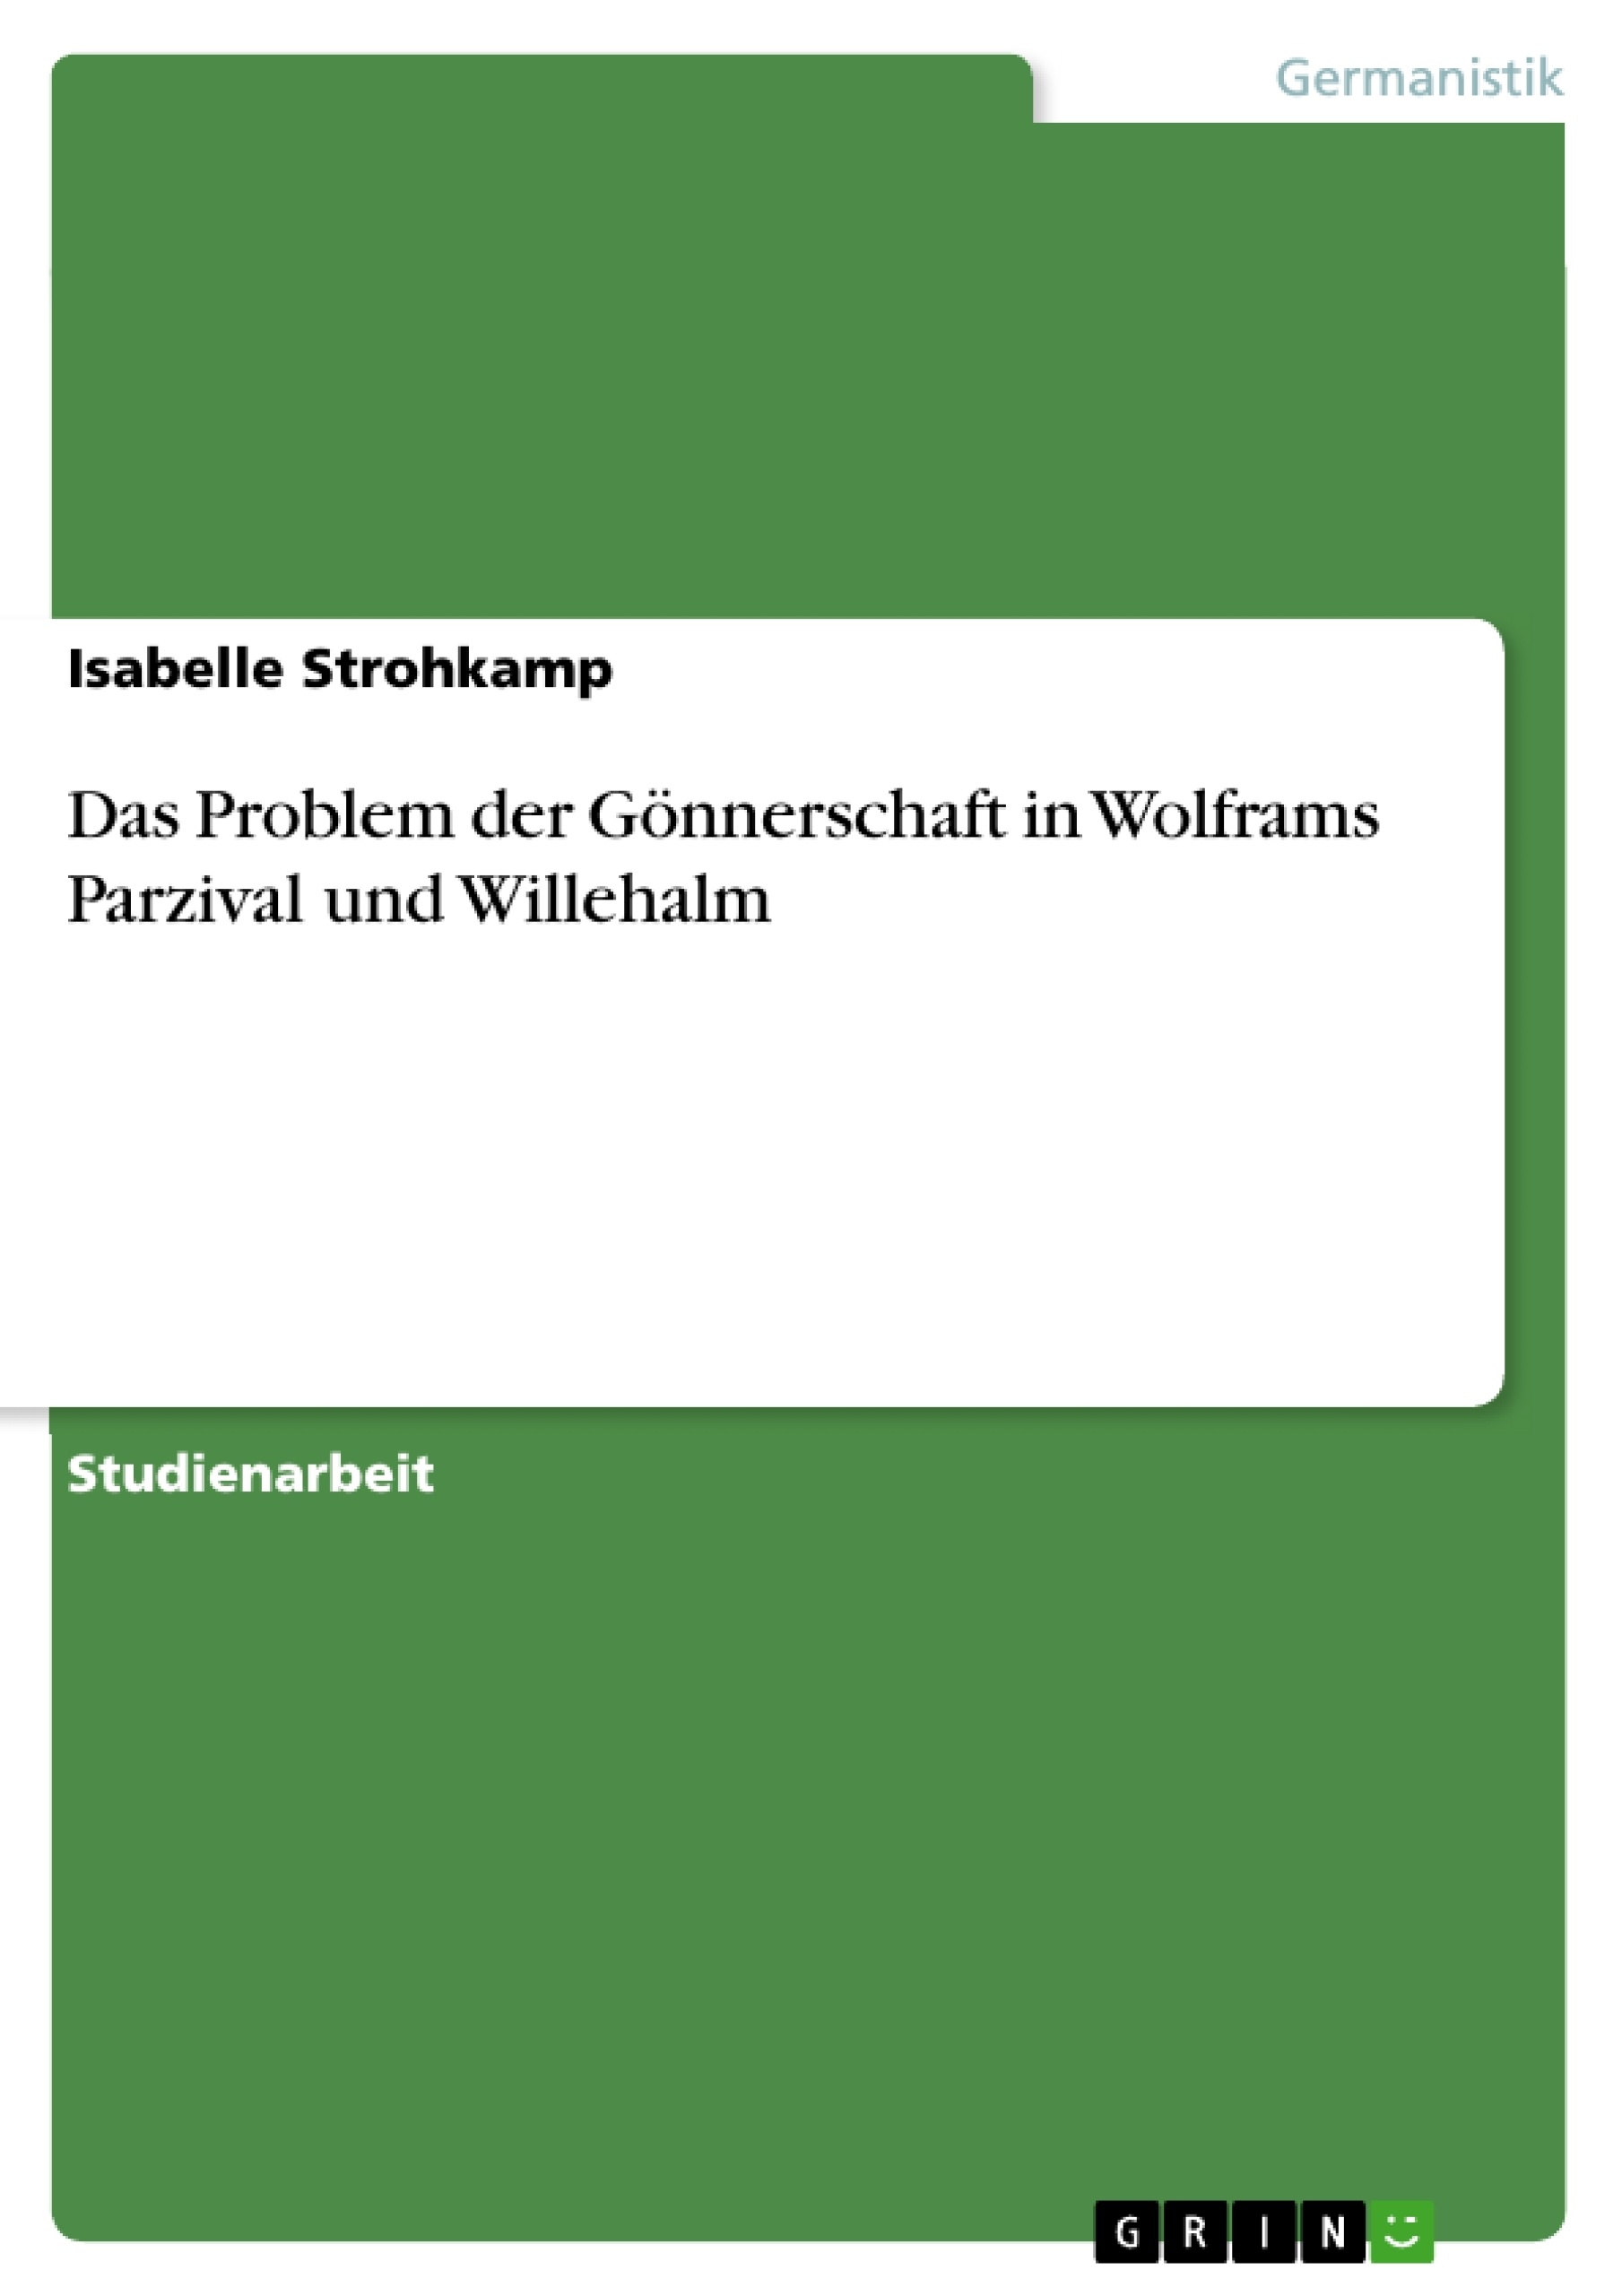 Title: Das Problem der Gönnerschaft in Wolframs Parzival und Willehalm